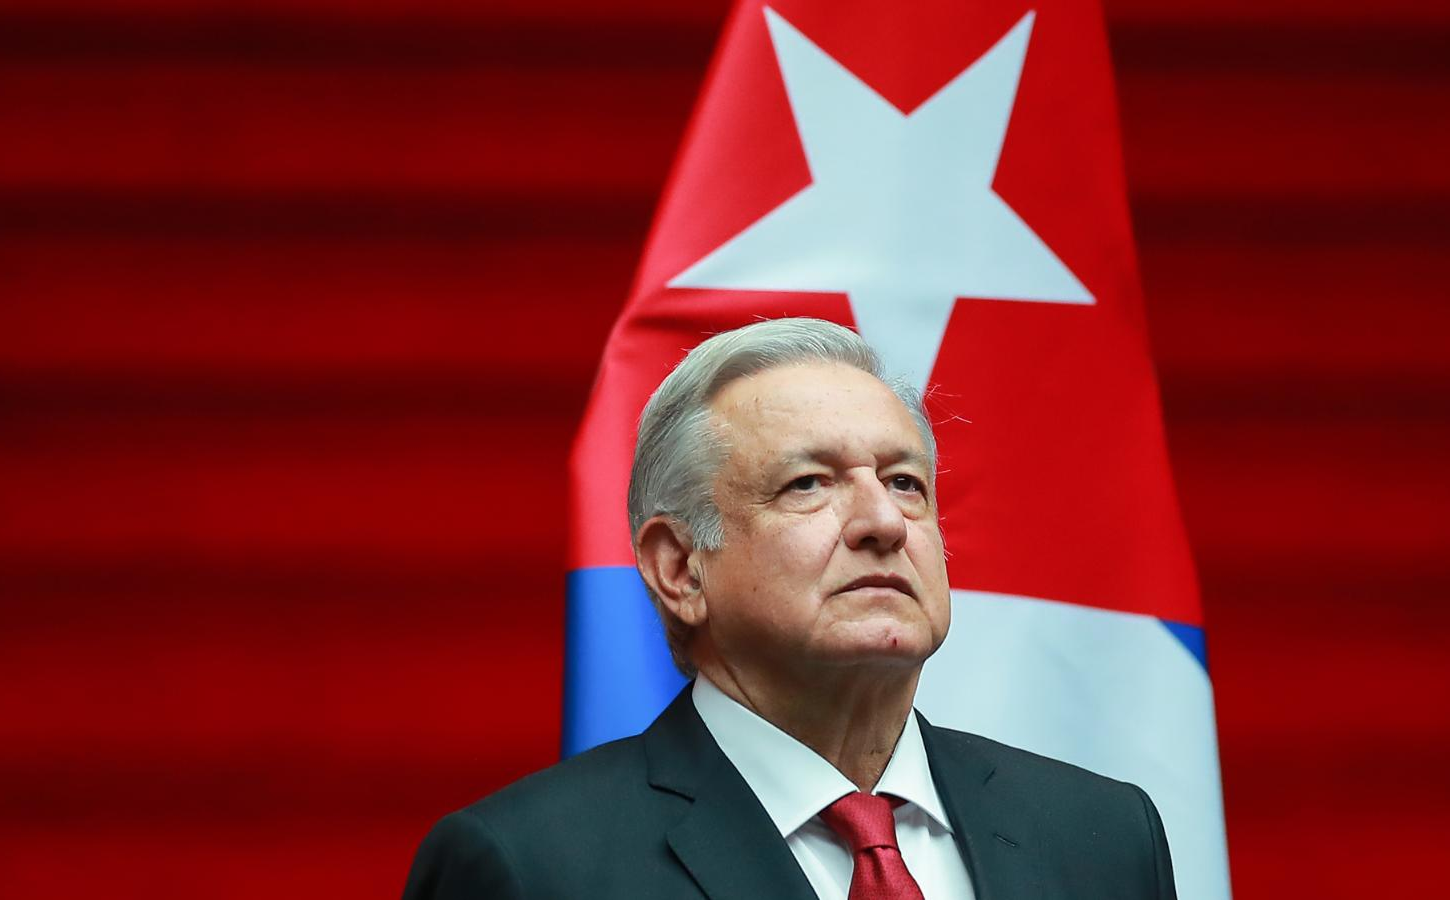 El presidente andres manuel lopez obrador frente a la bandera de cuba